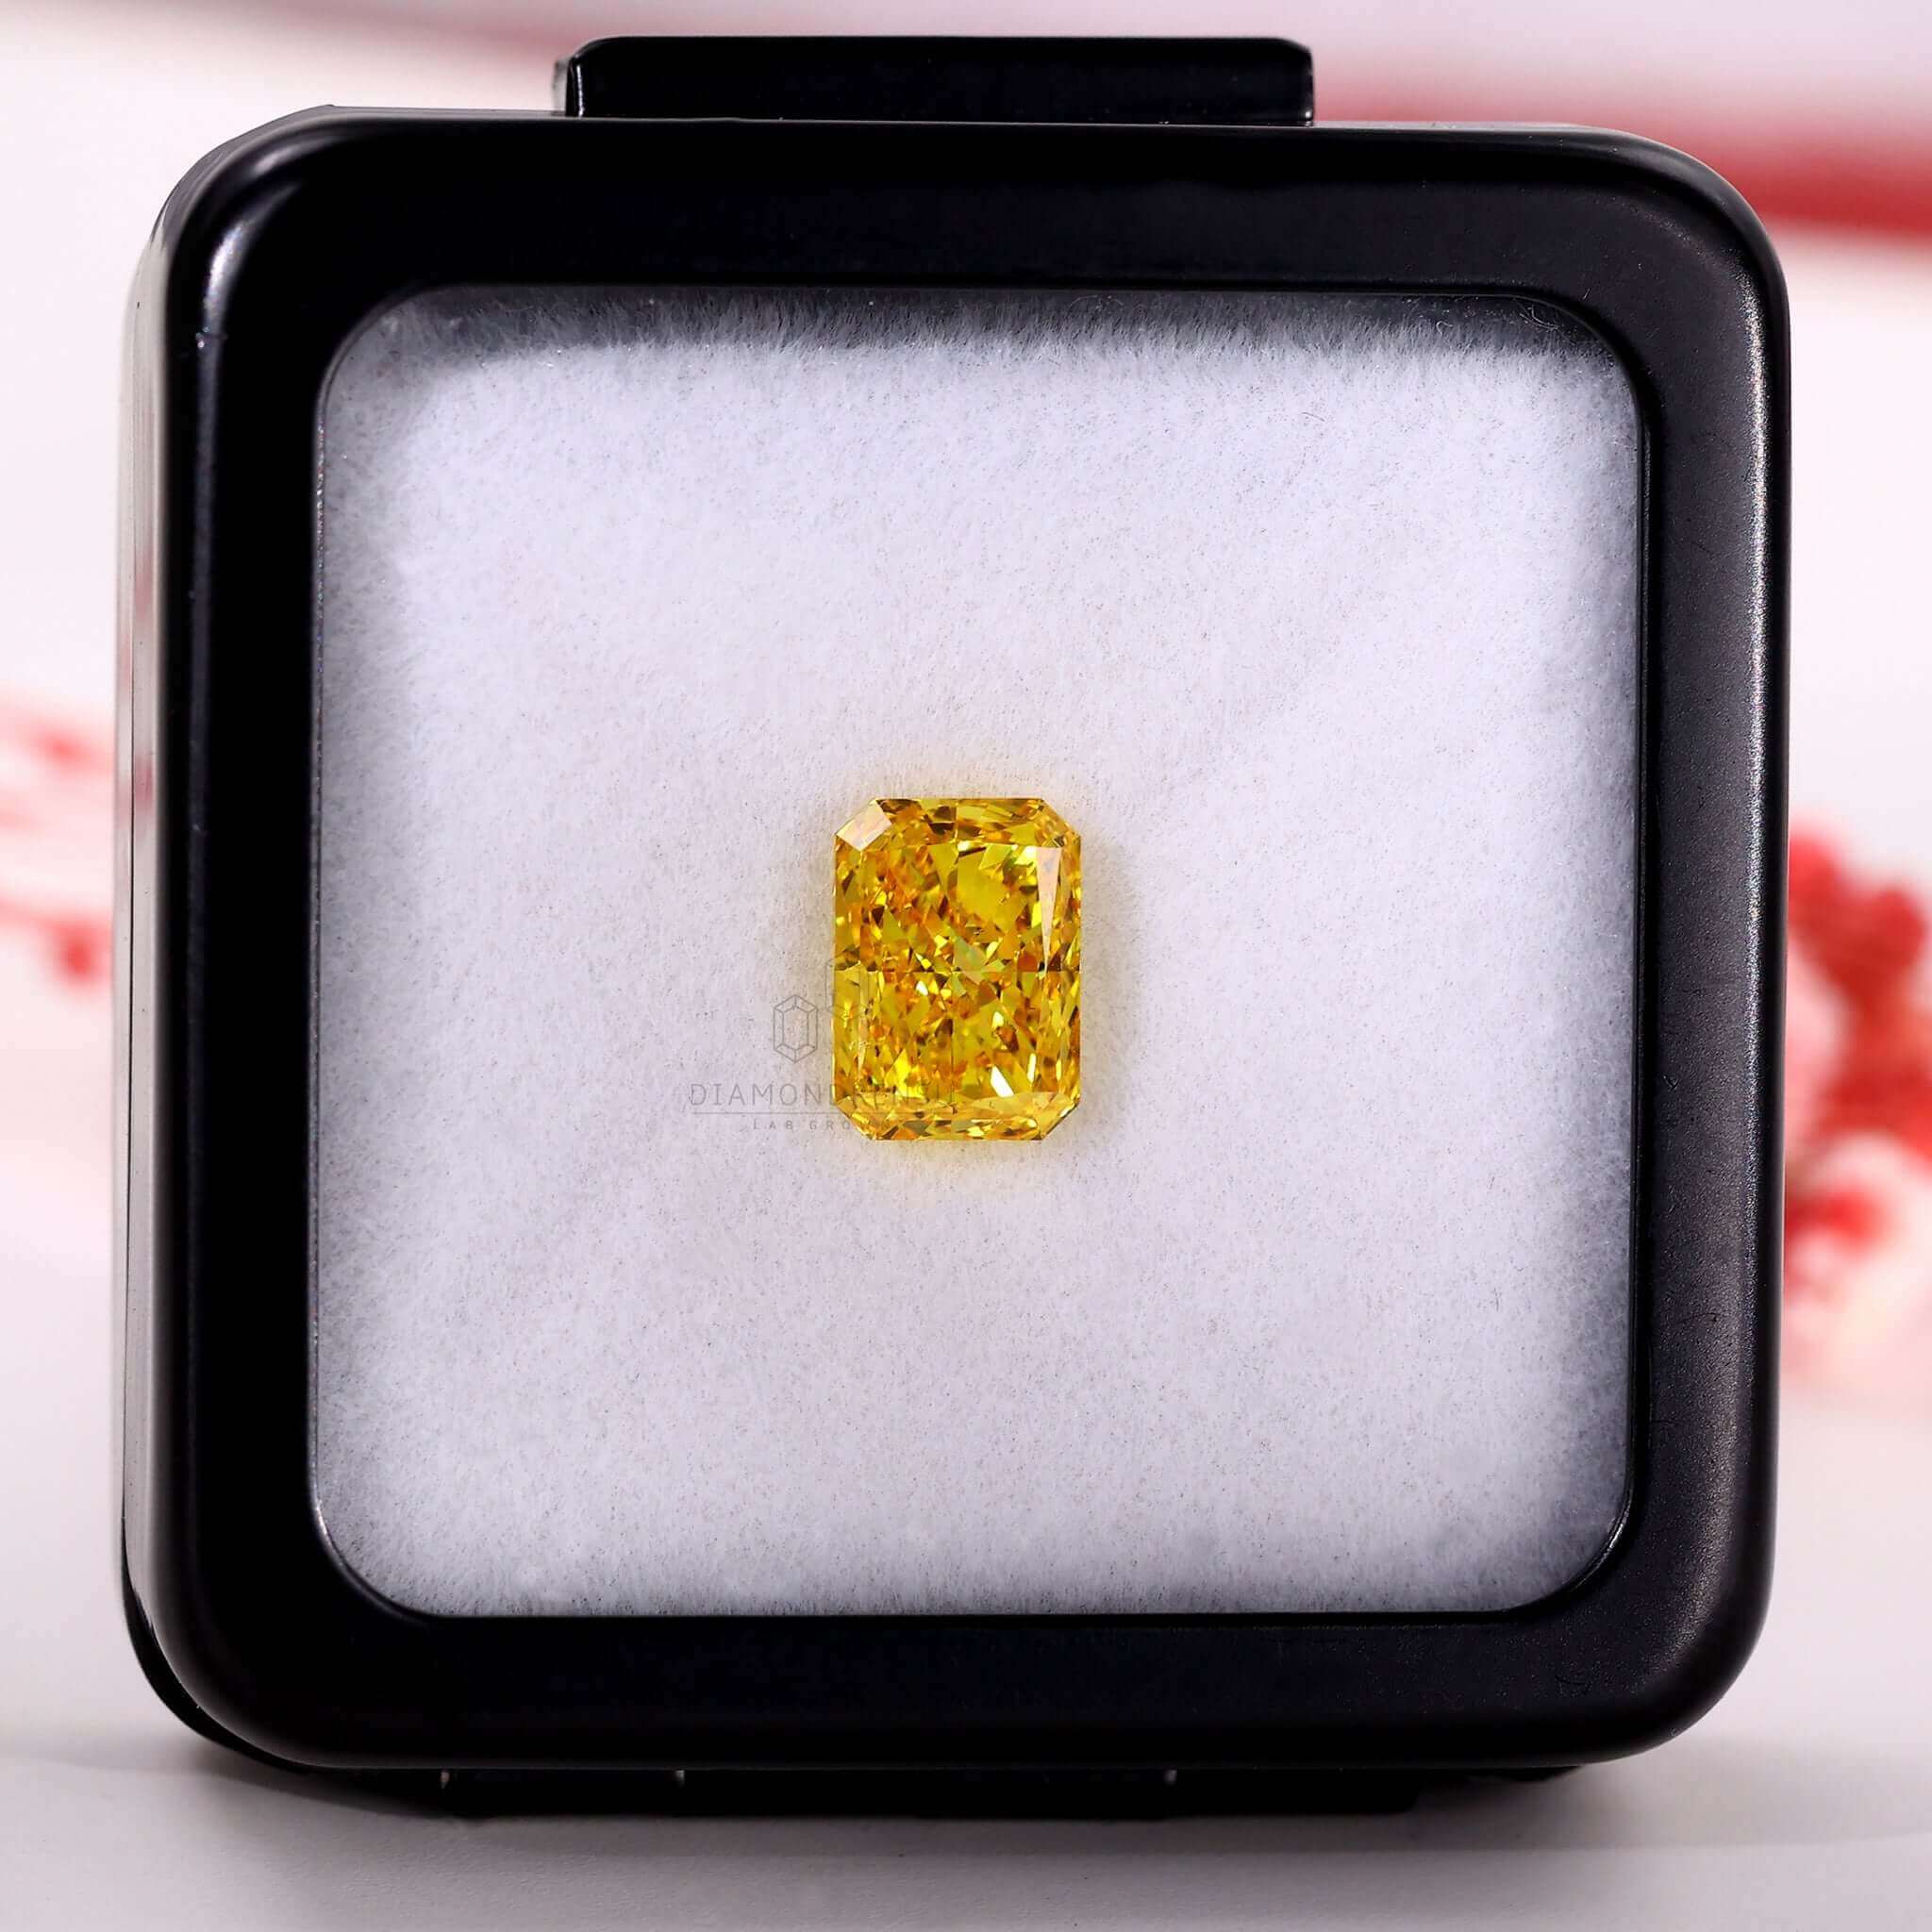 radiant cut lab created diamond